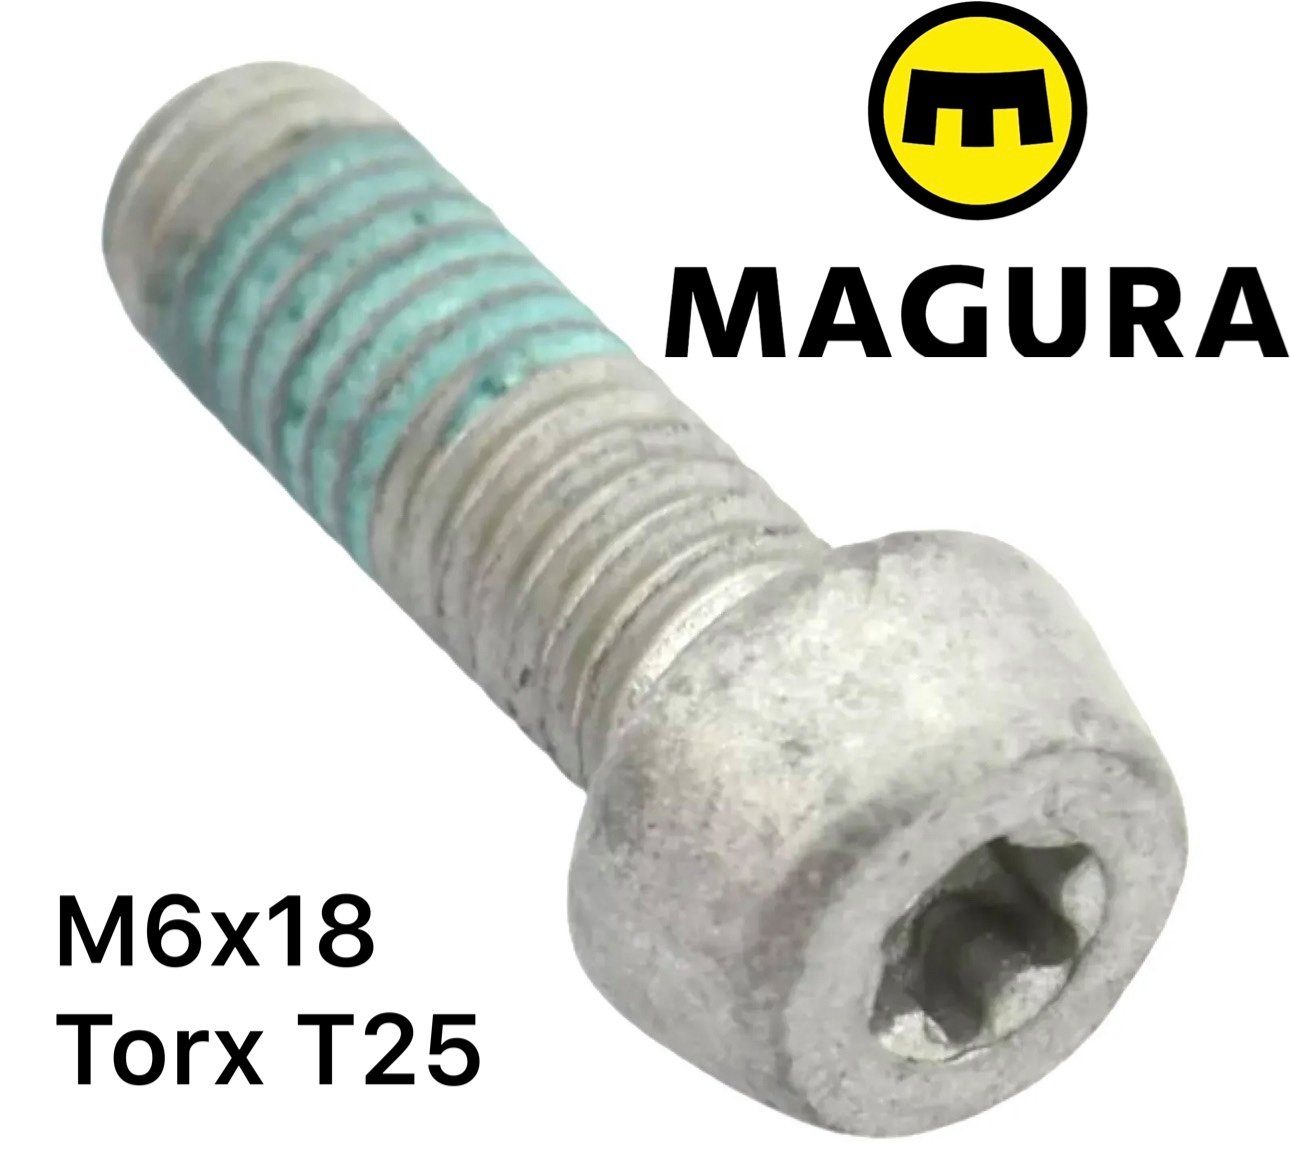 Magura Schrauben-Set Magura Alu M6x18 Torx T25 Adapter Befestigungschraube